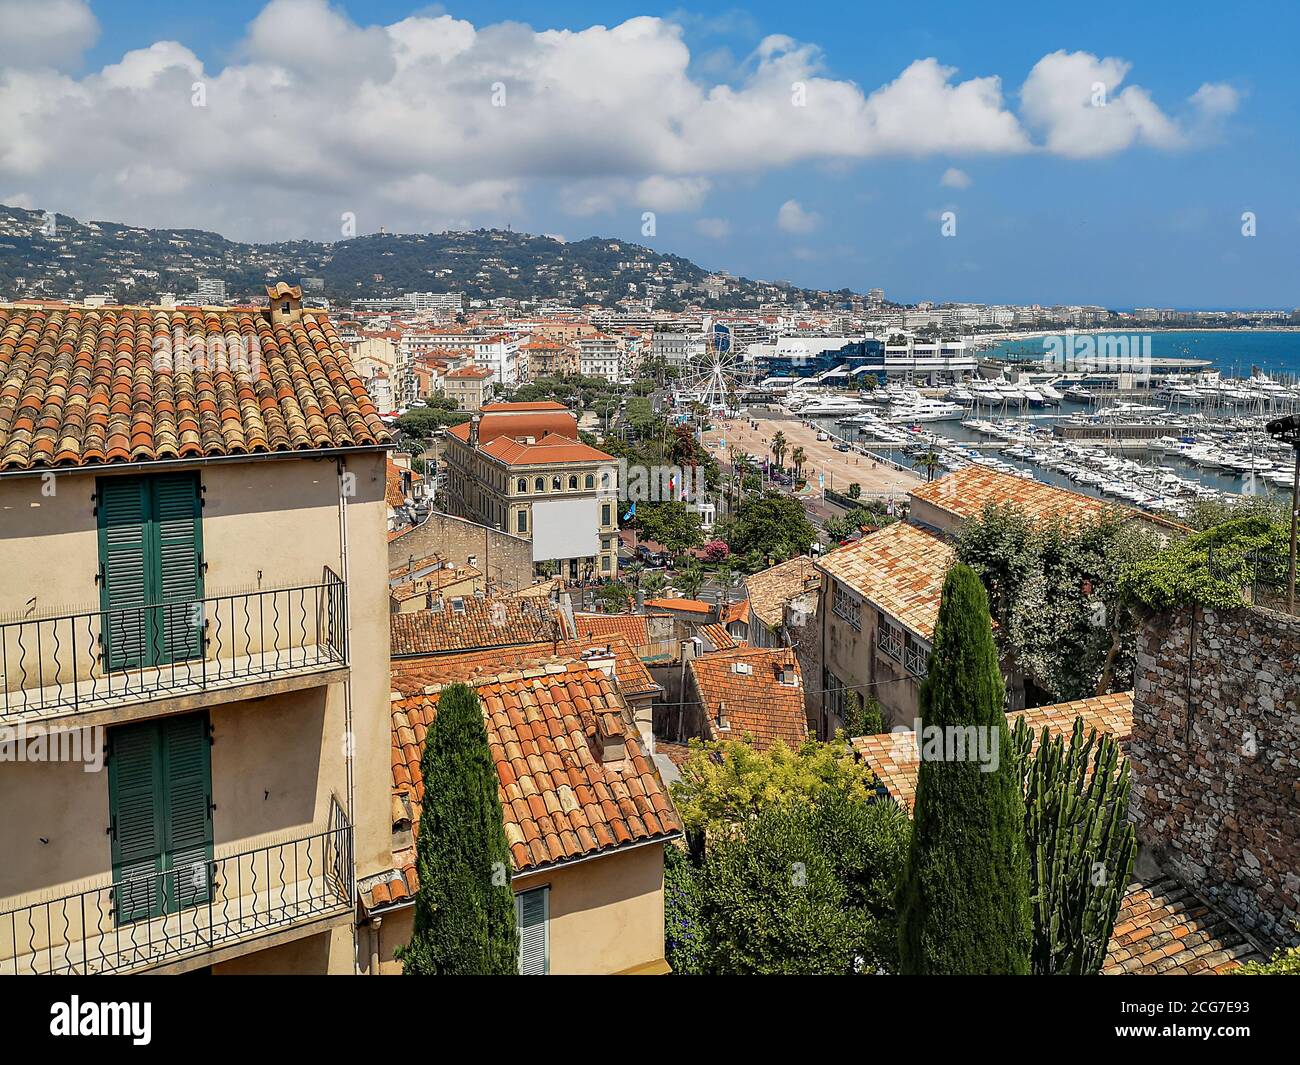 Vue panoramique sur la ville de Nice avec des maisons traditionnelles avec des toits de tuiles rouges, mer Méditerranée avec yachts dans le port, roue d'observation. Banque D'Images